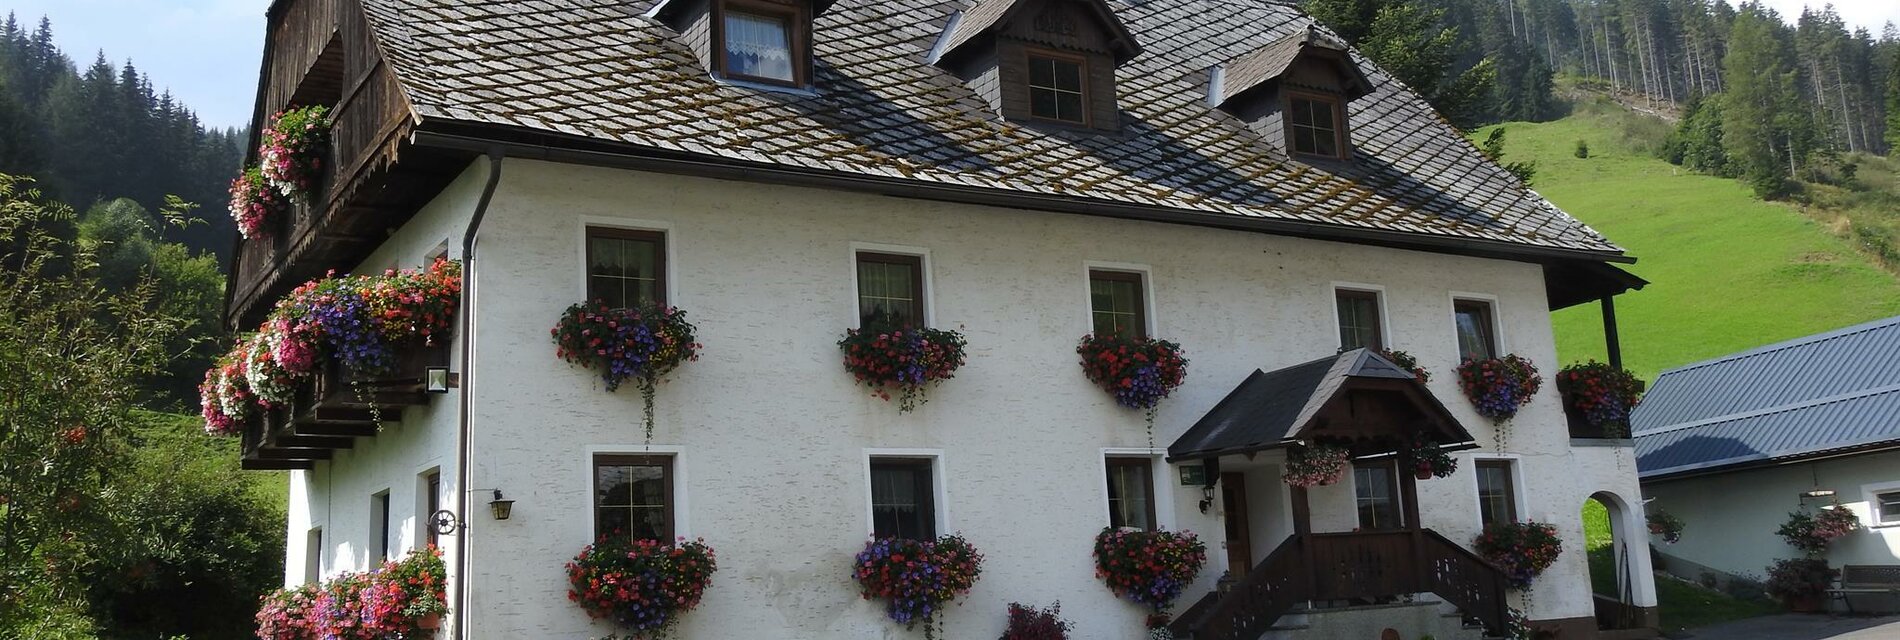 Bauernhof Streibl-Murtal-Steiermark